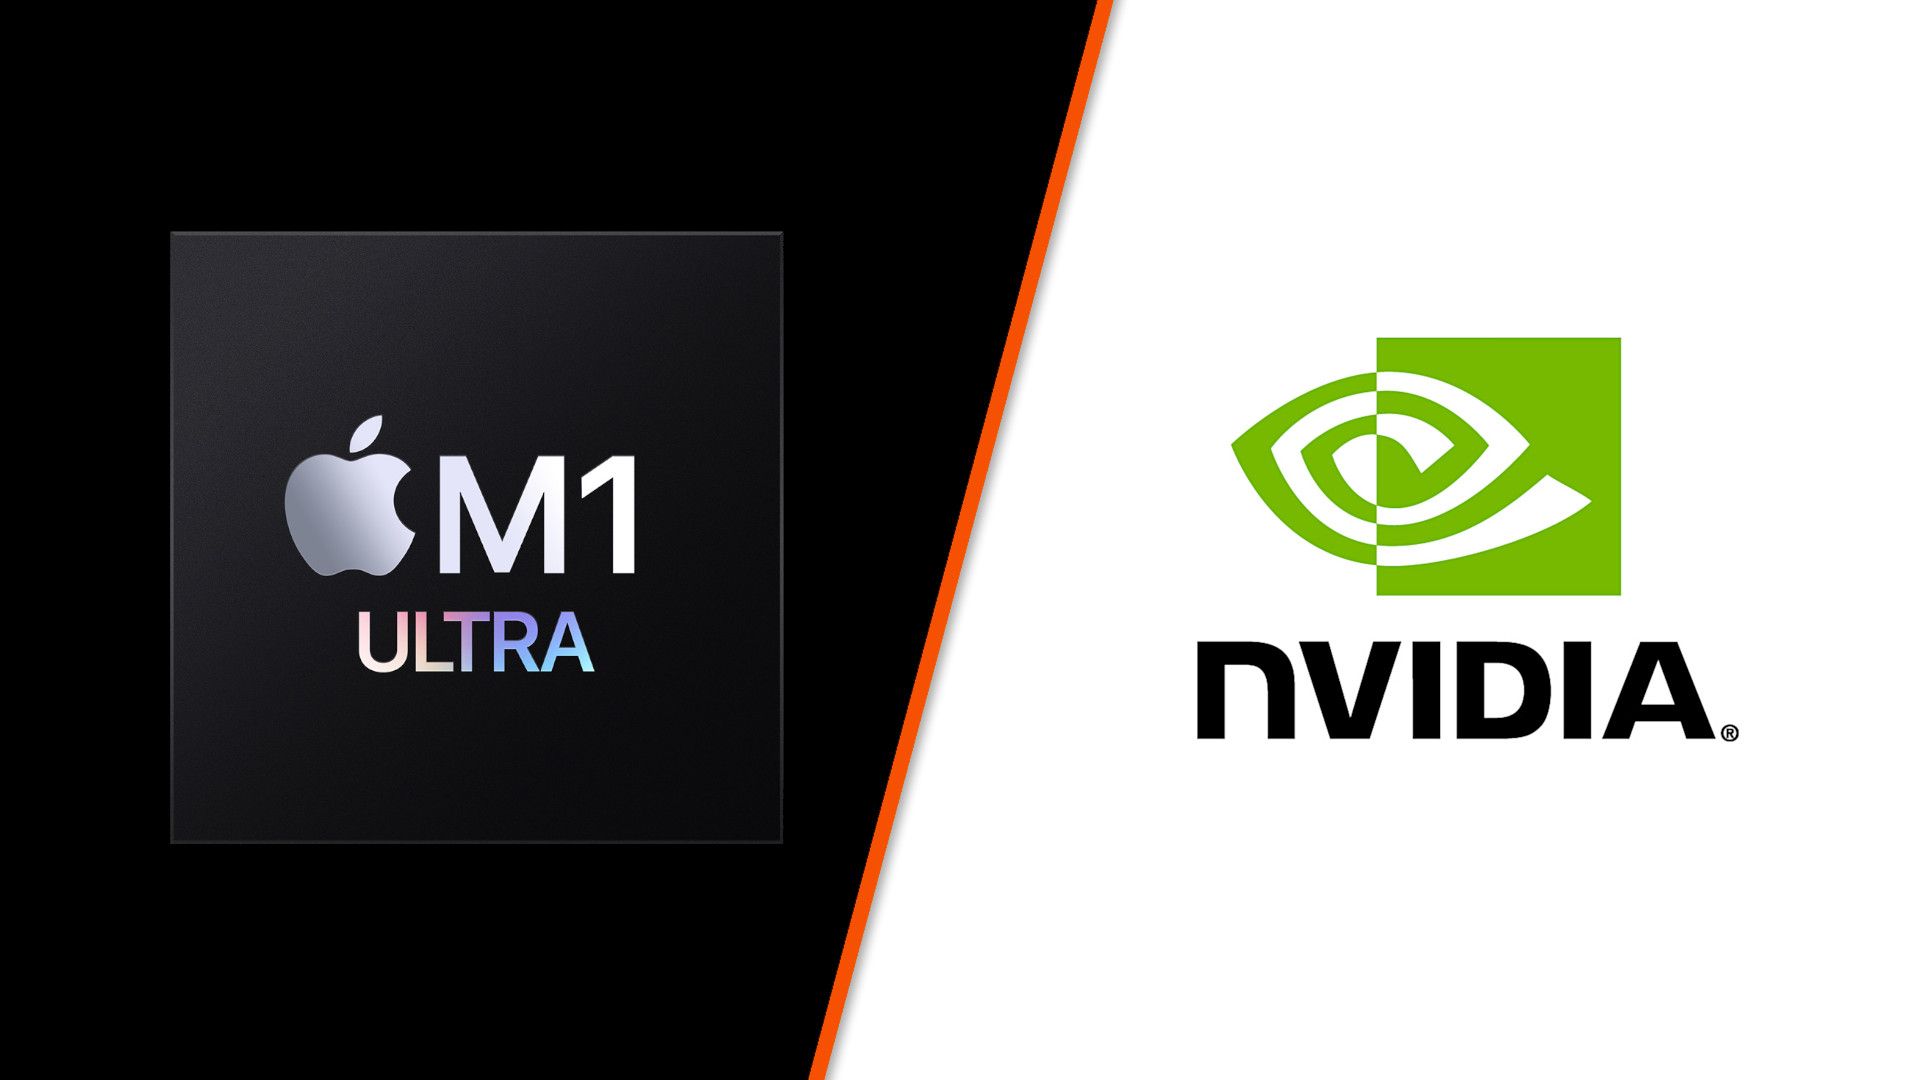 M1 Ultra не превосходит графический процессор Nvidia RTX 3090, несмотря на графики Apple